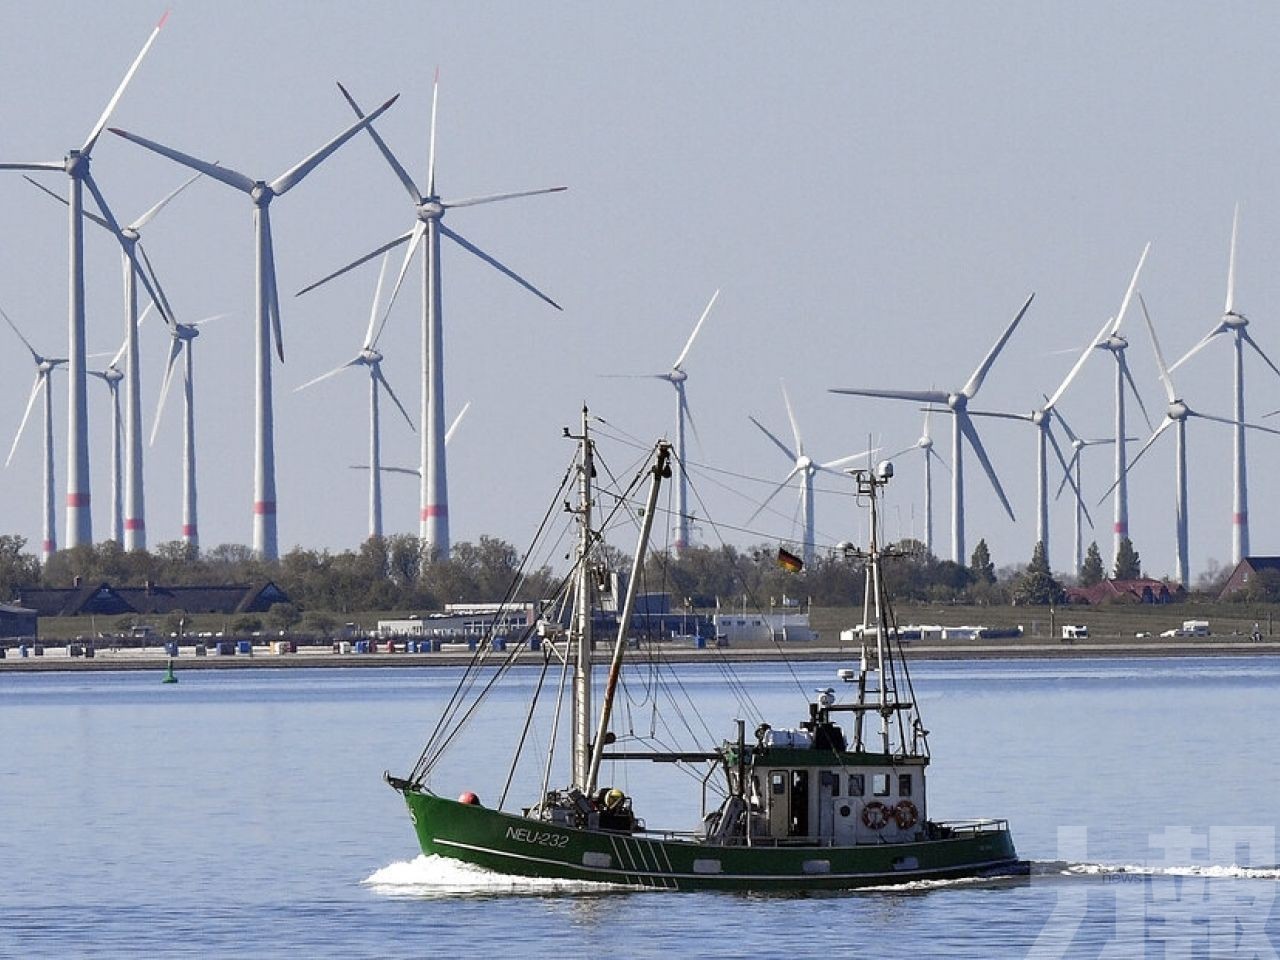 歐盟提出加快發展可再生能源